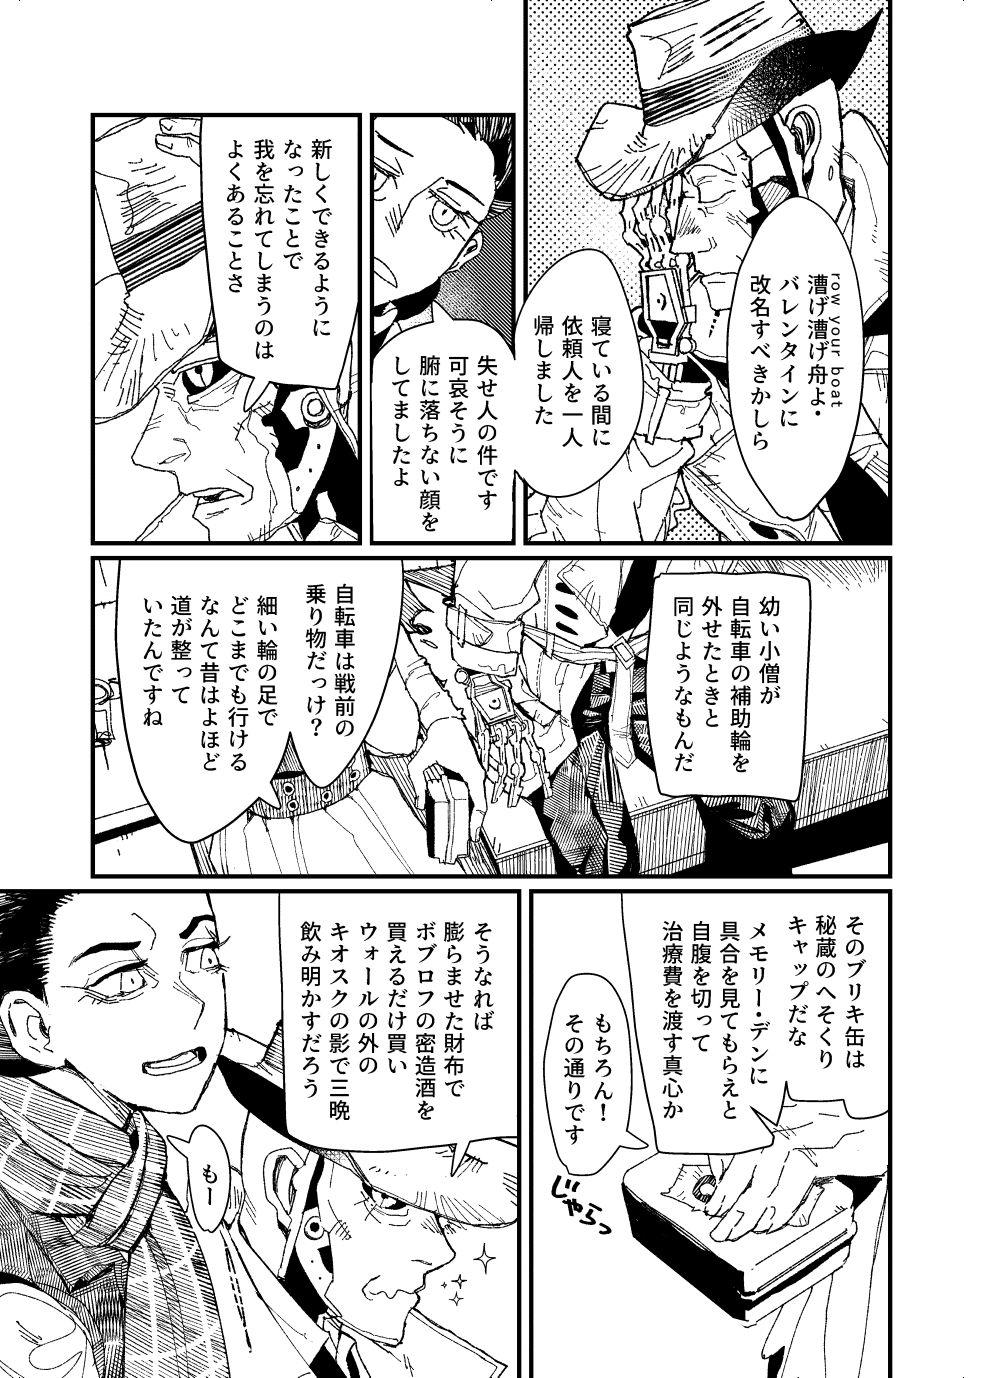 [Tanokura] FO4 [R18] Dimaniku Manga 16